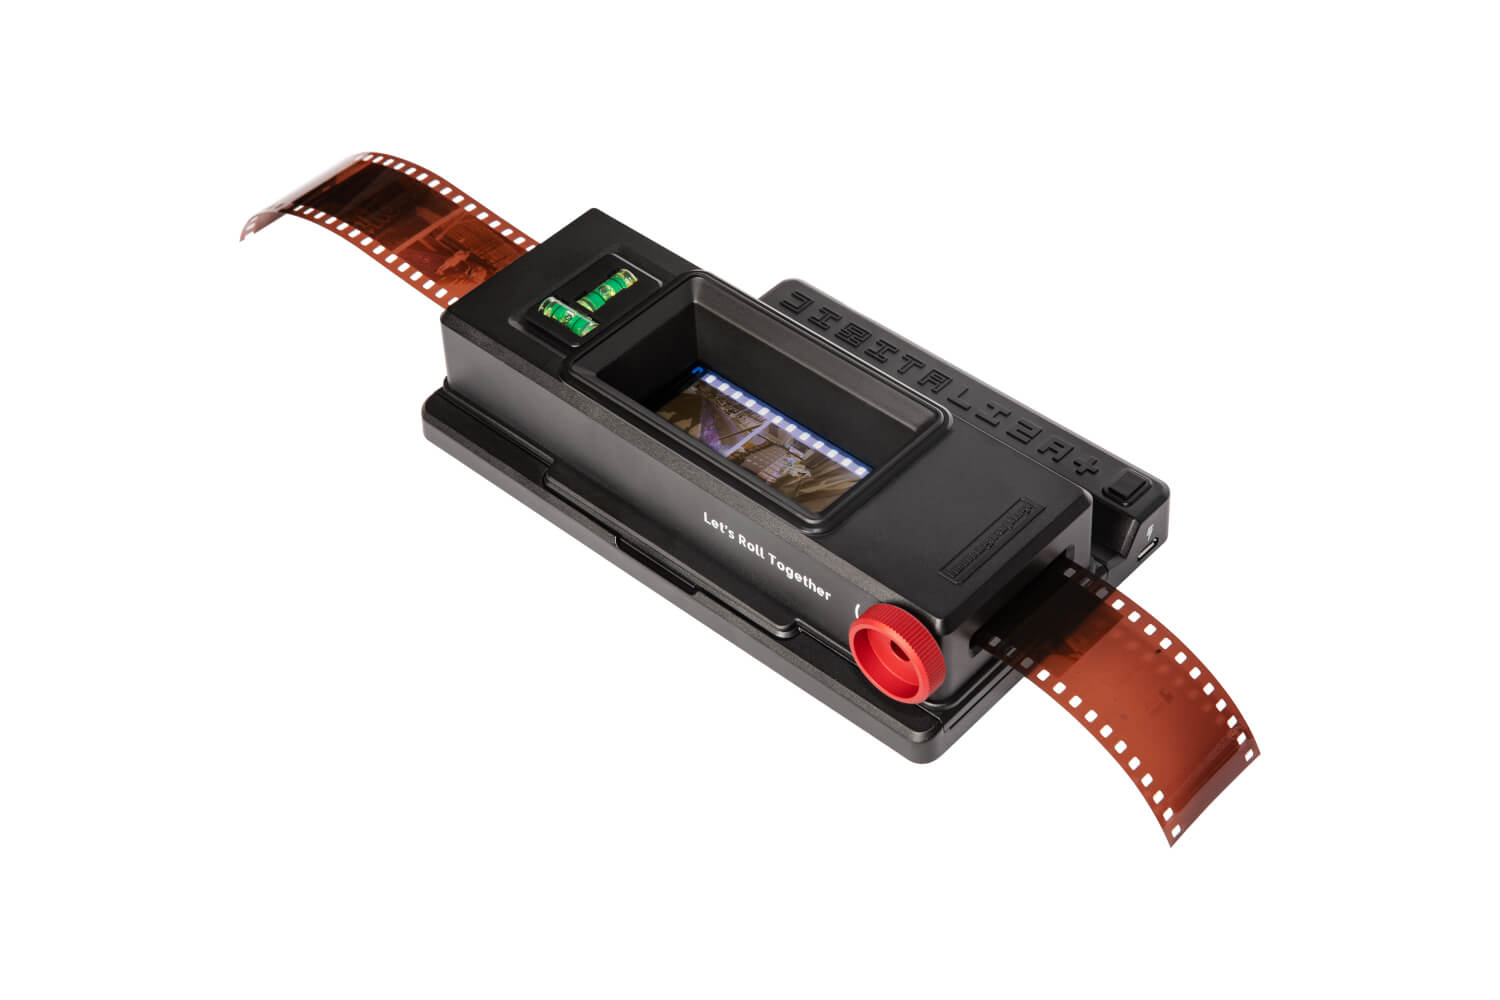 DigitaLIZA 35mm film carrier